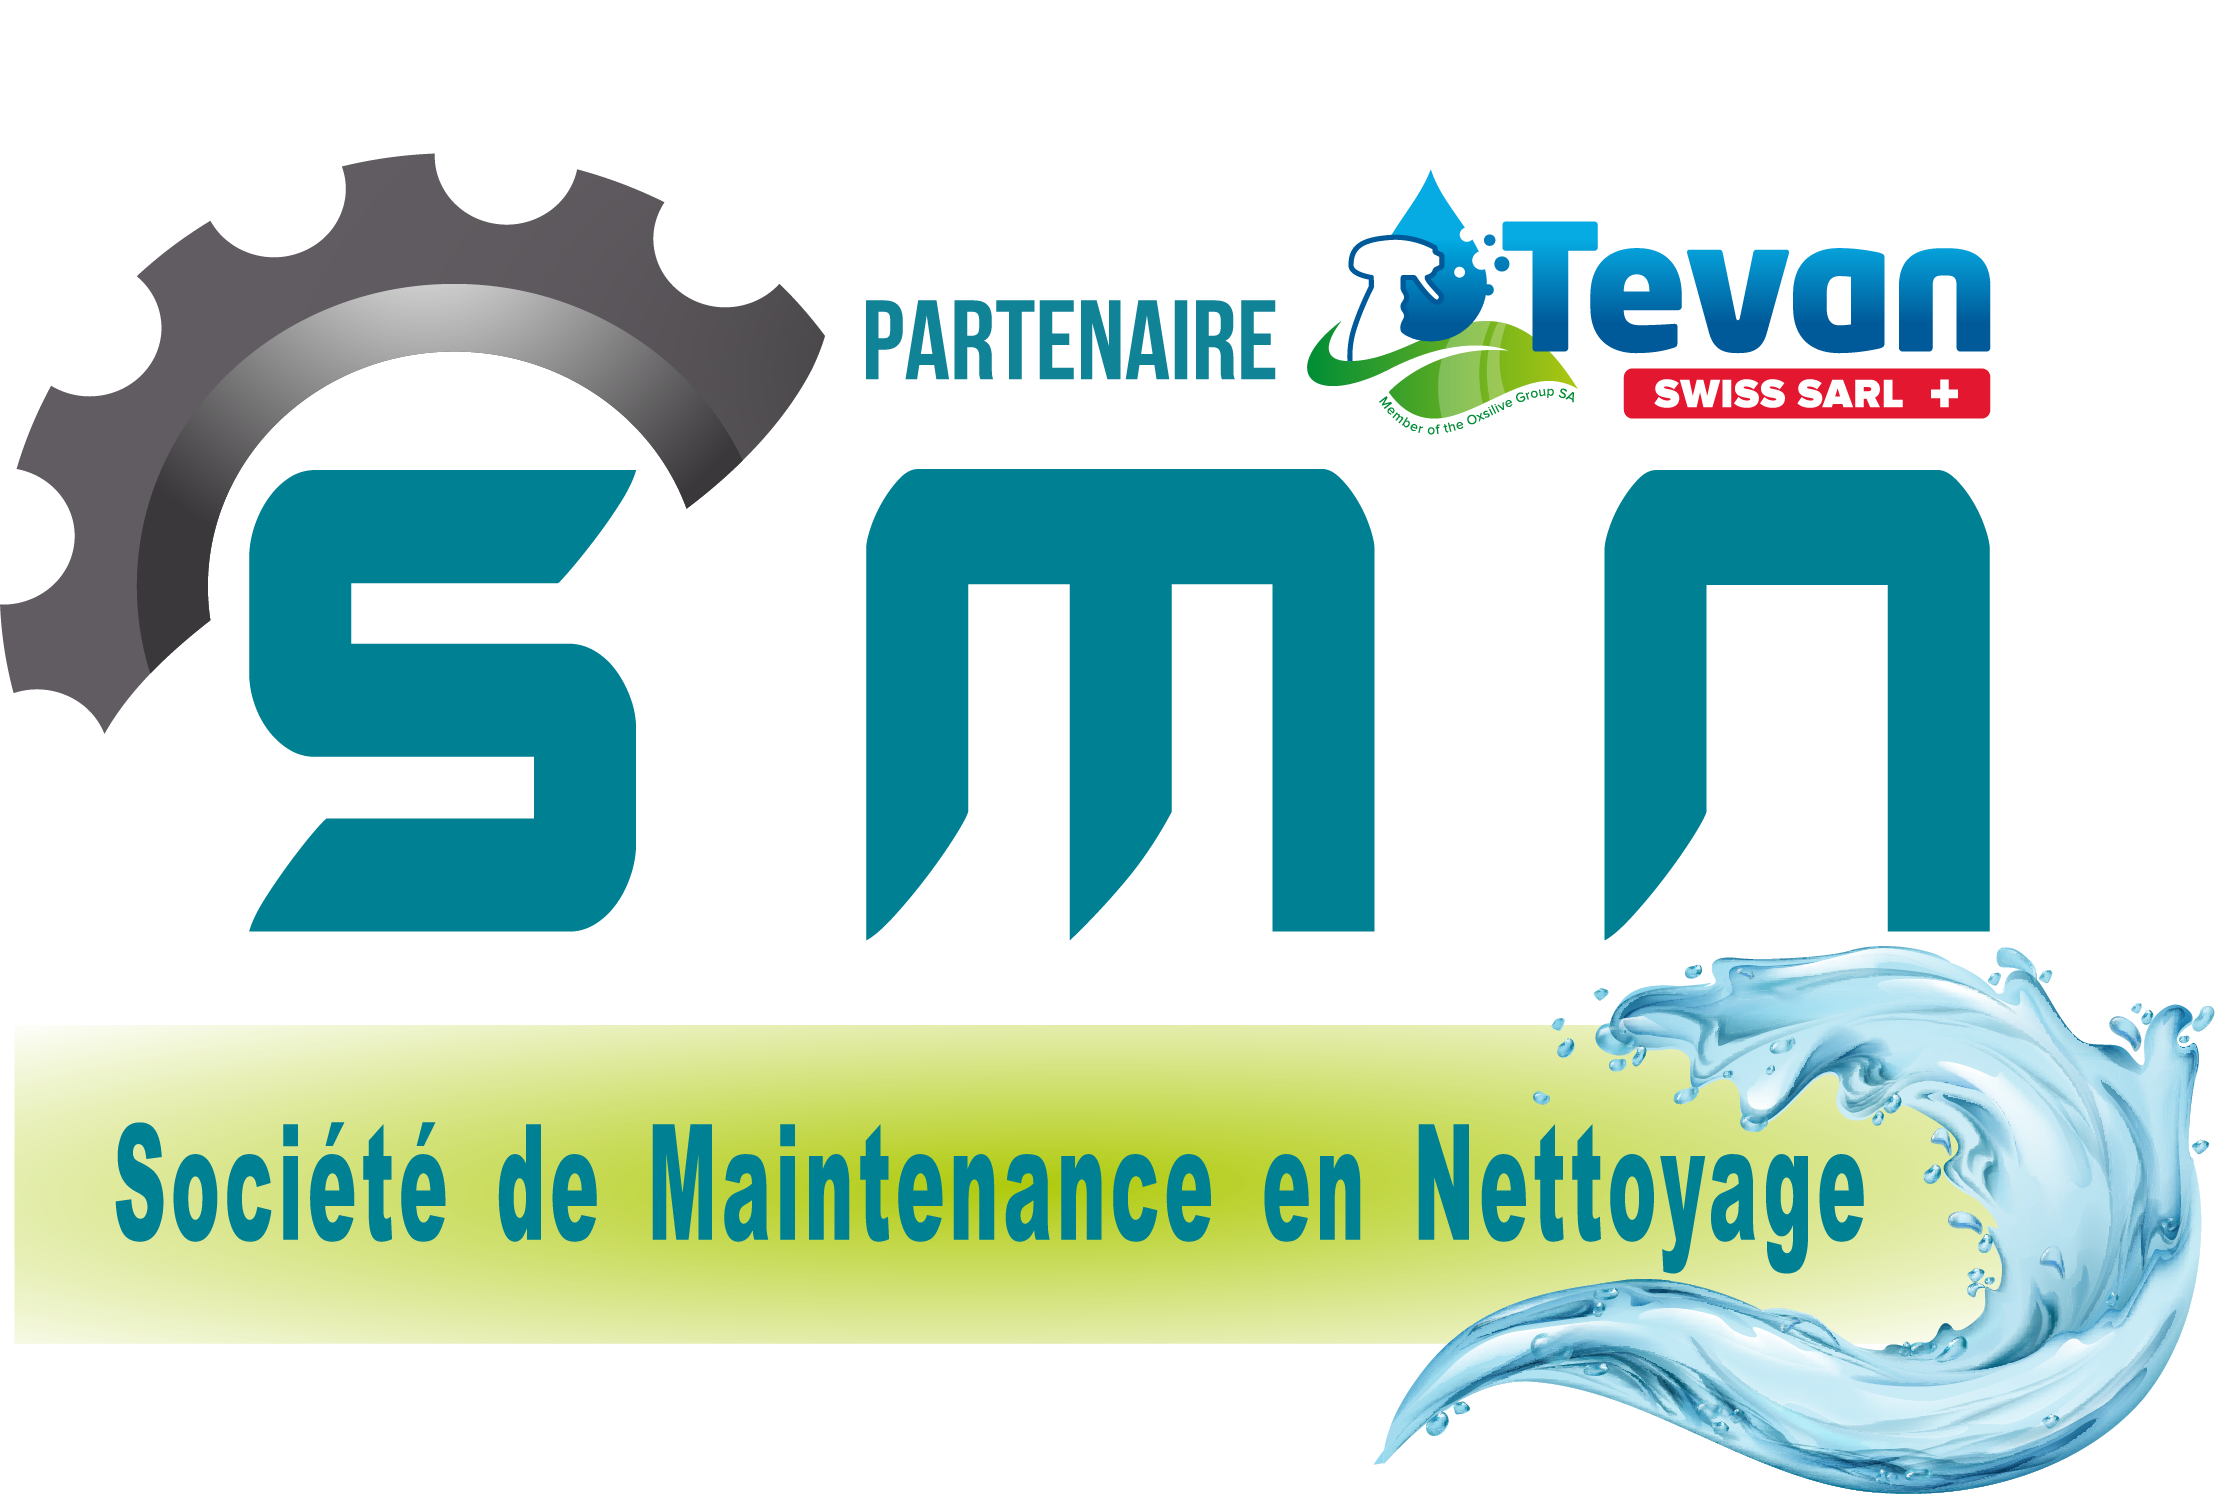 Logo SMN